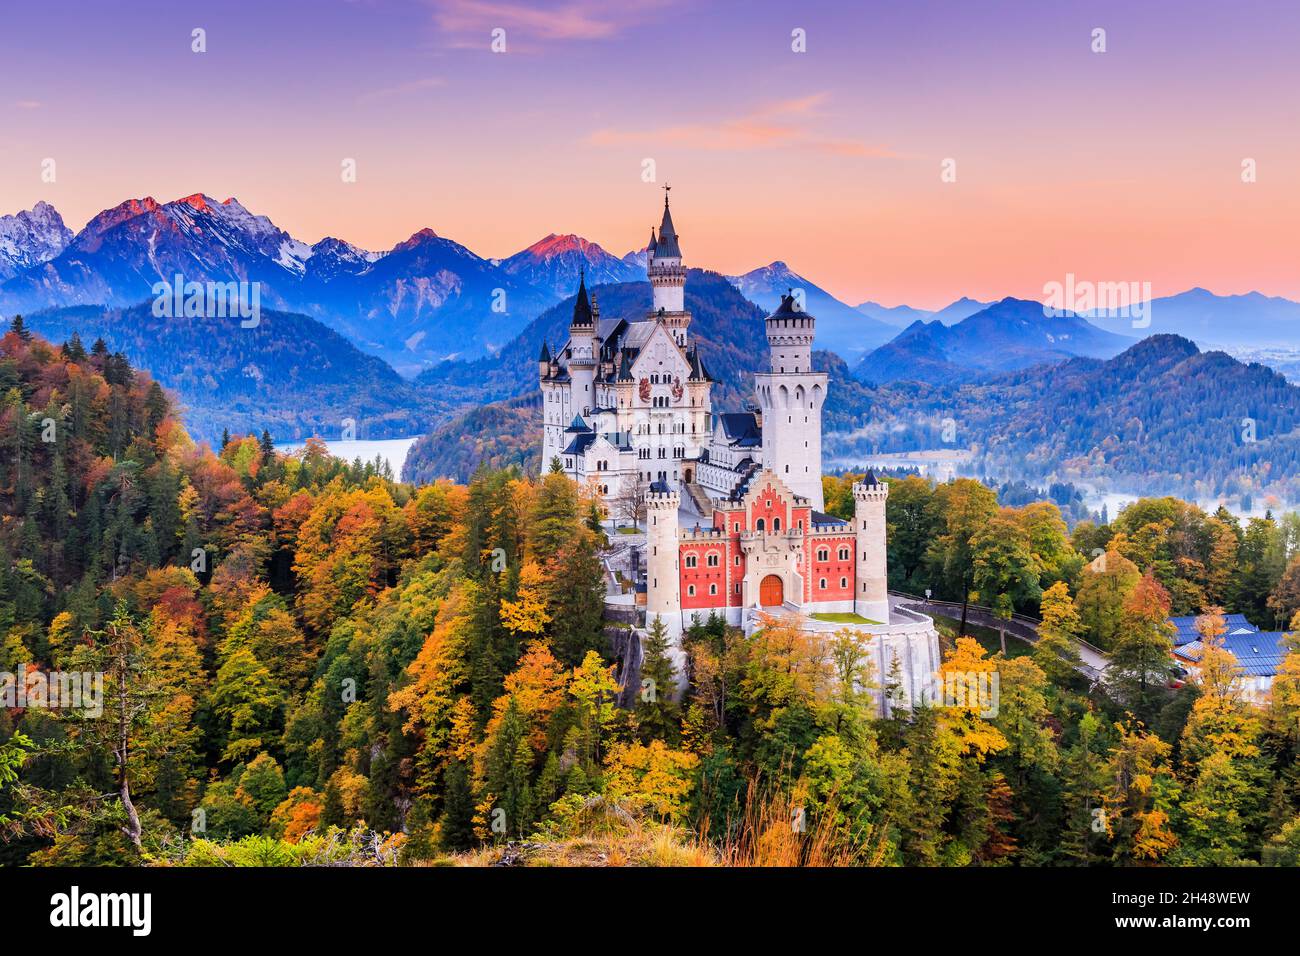 Allemagne, Château de Neuschwanstein.Vue sur le château et les Alpes bavaroises au lever du soleil pendant la saison d'automne. Banque D'Images